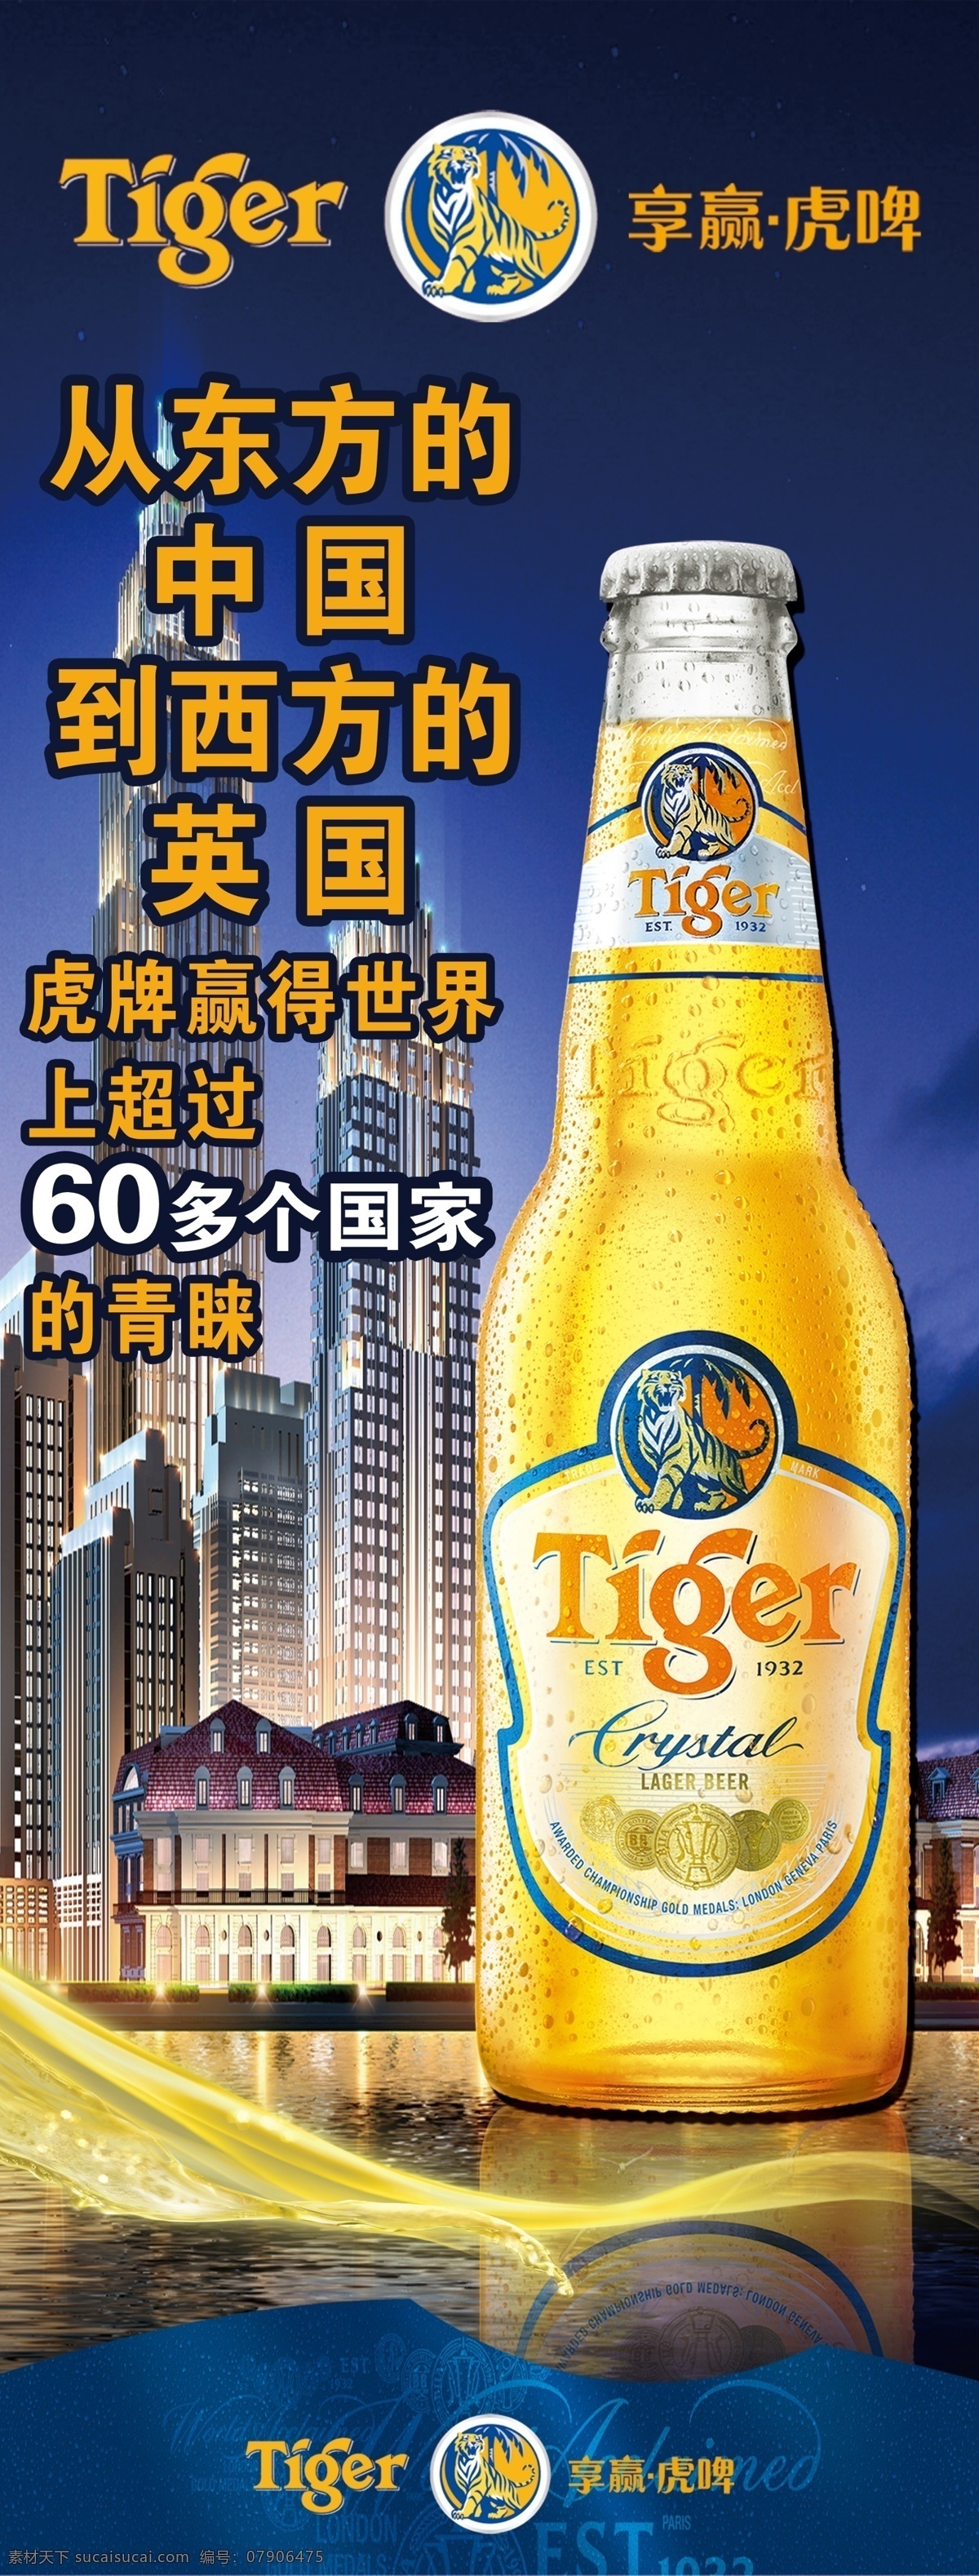 虎牌 啤酒 宣传 东方 盅 西方 英国 tiger 原创设计 原创海报